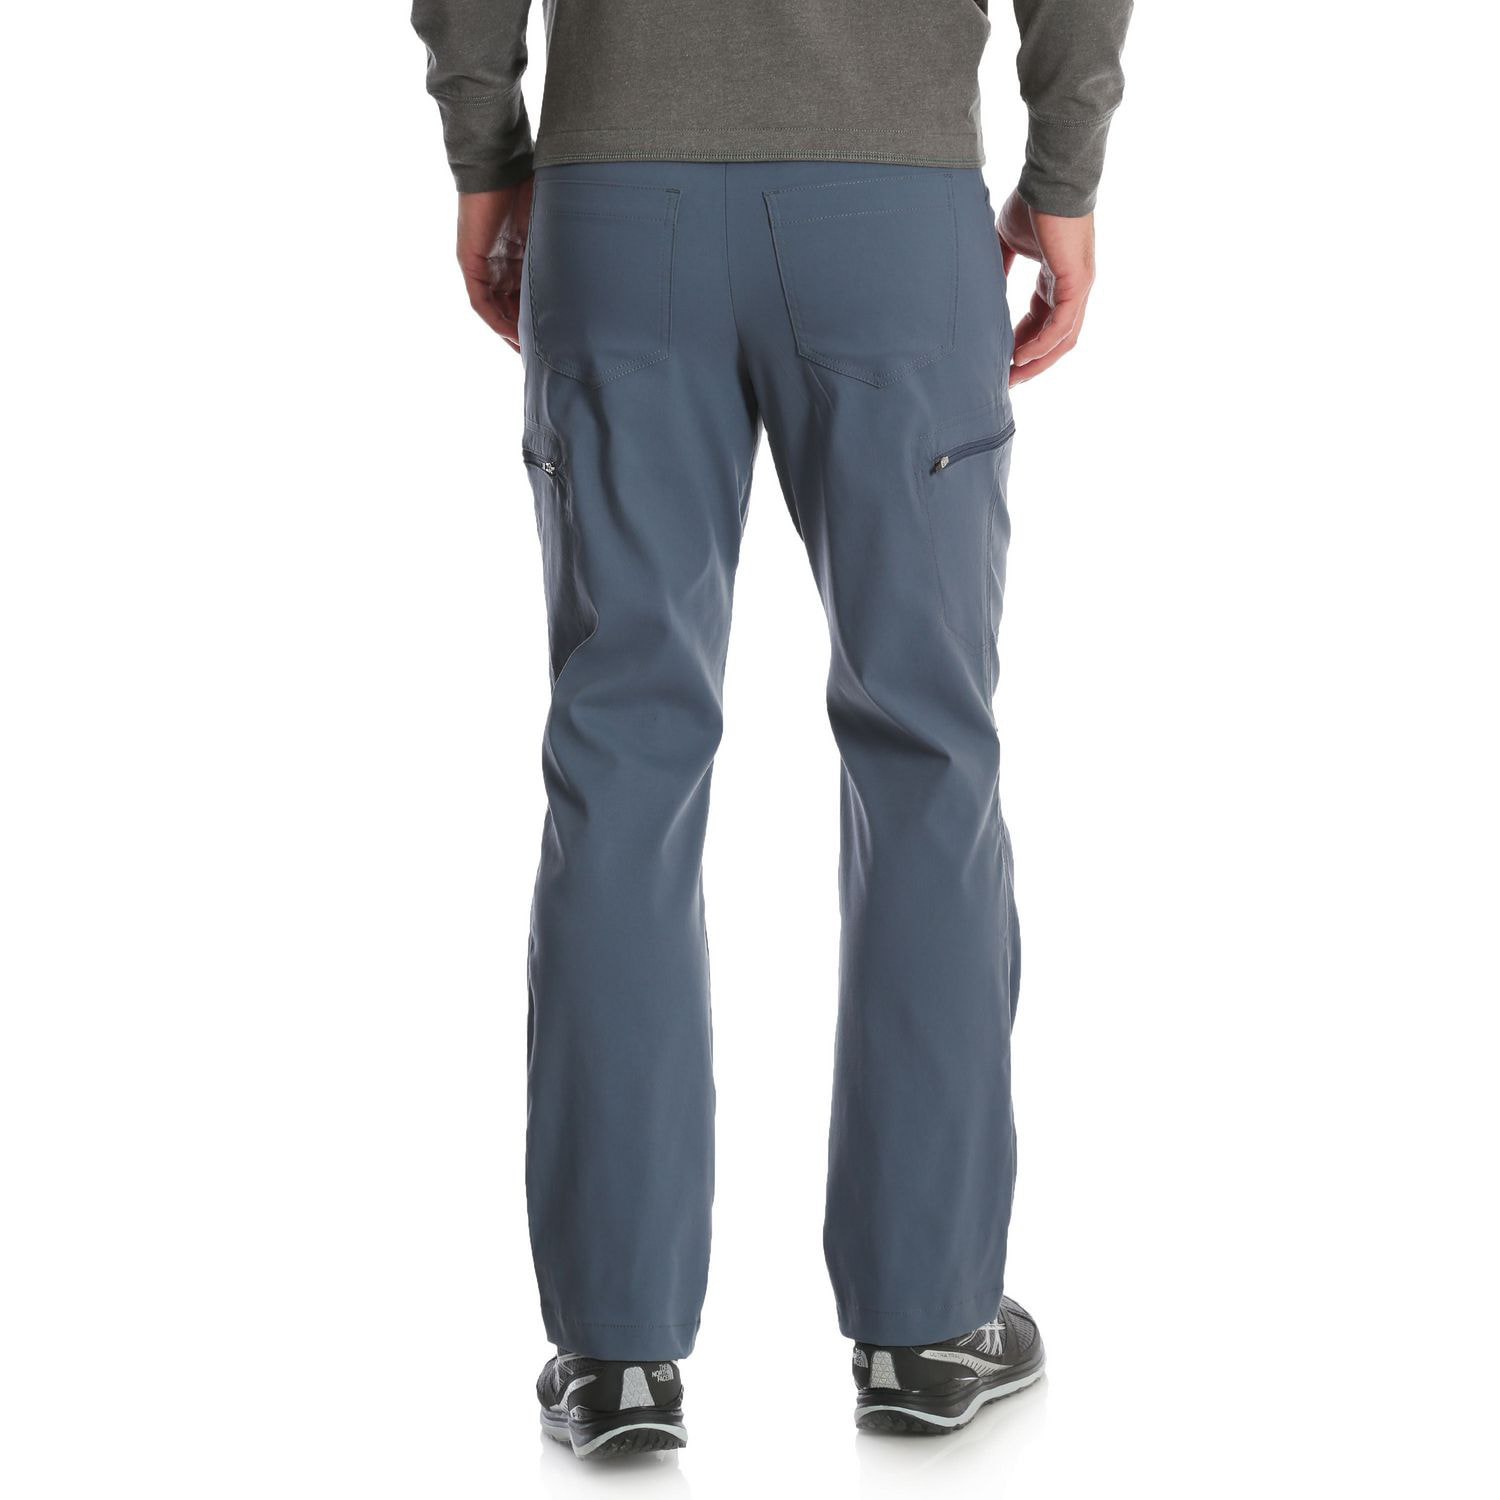 Designer Leggings - wrangler casey cargo shorts lakeport blue - RingenShops